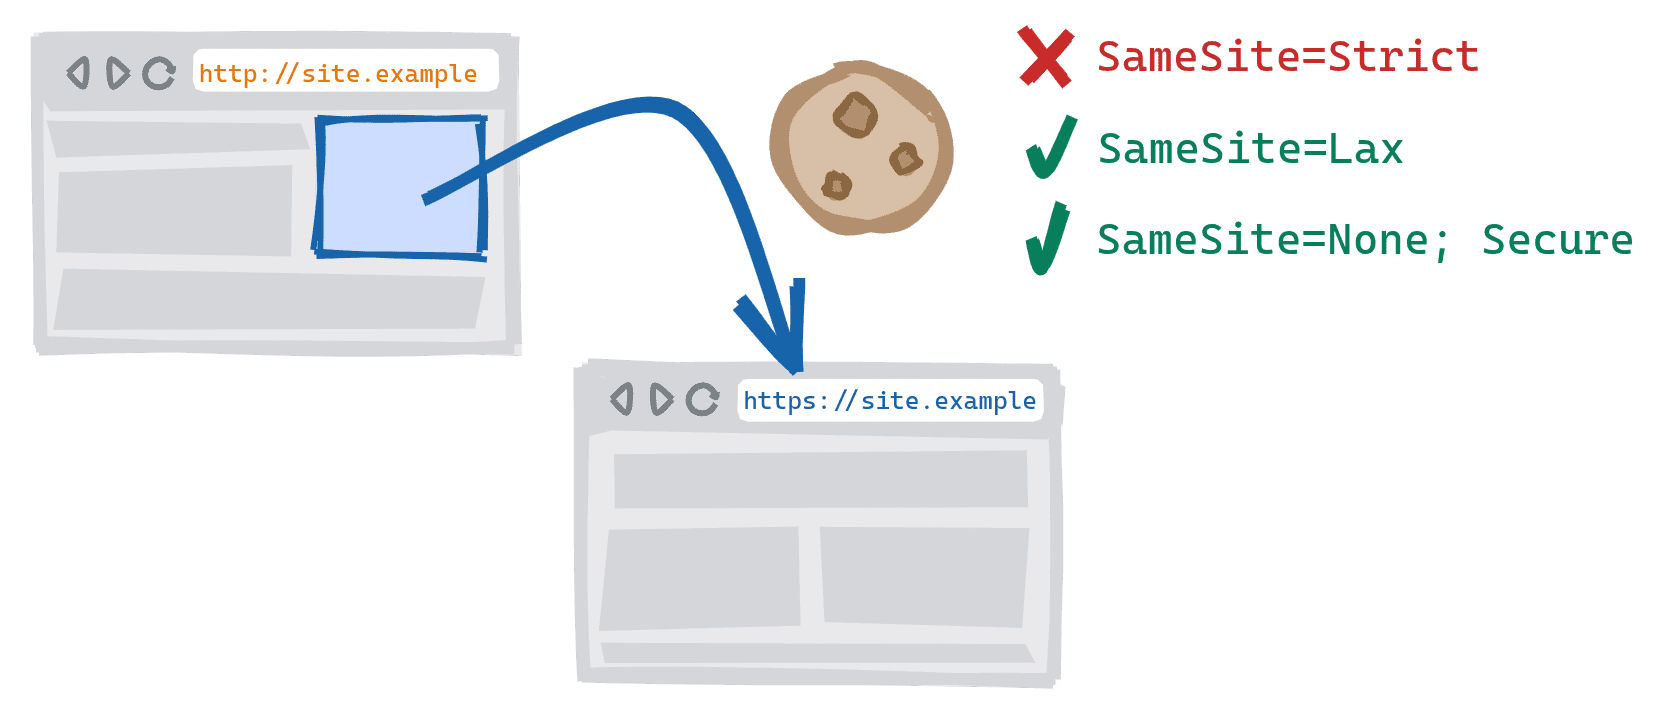 在网站的不安全 HTTP 版本上点击指向安全 HTTPS 版本的链接，从而触发跨架构导航。SameSite=Strict Cookie 被屏蔽，SameSite=Lax，并且 SameSite=None;允许使用安全 Cookie。